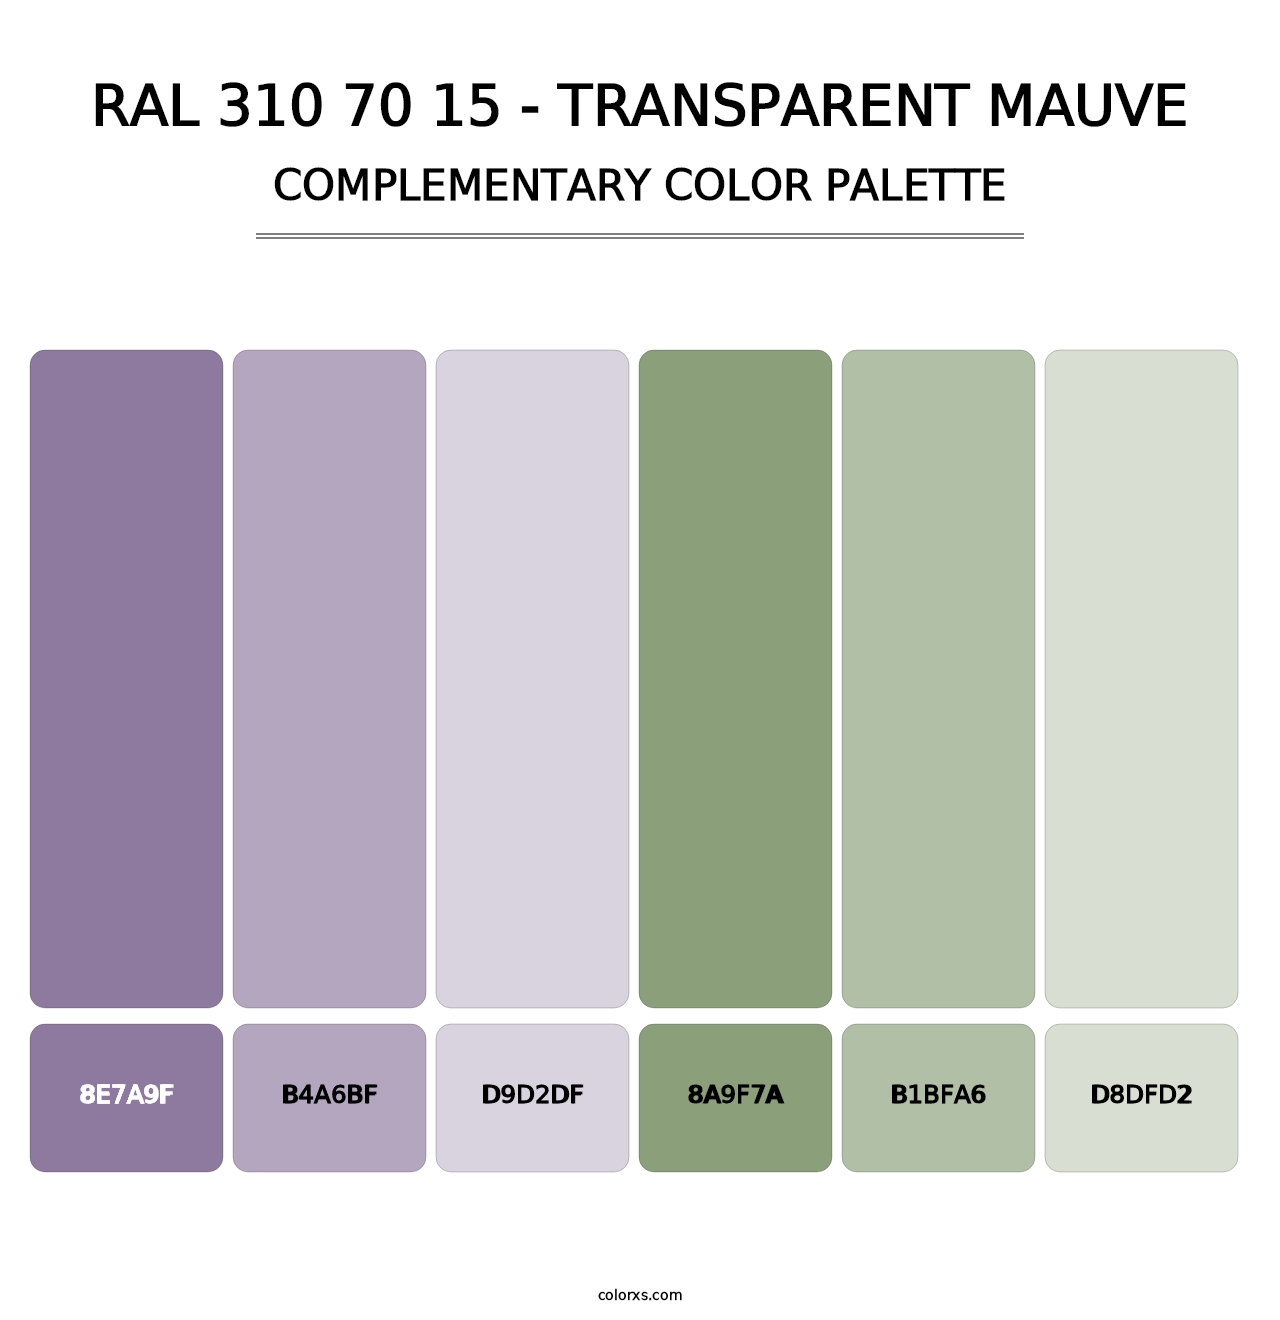 RAL 310 70 15 - Transparent Mauve - Complementary Color Palette